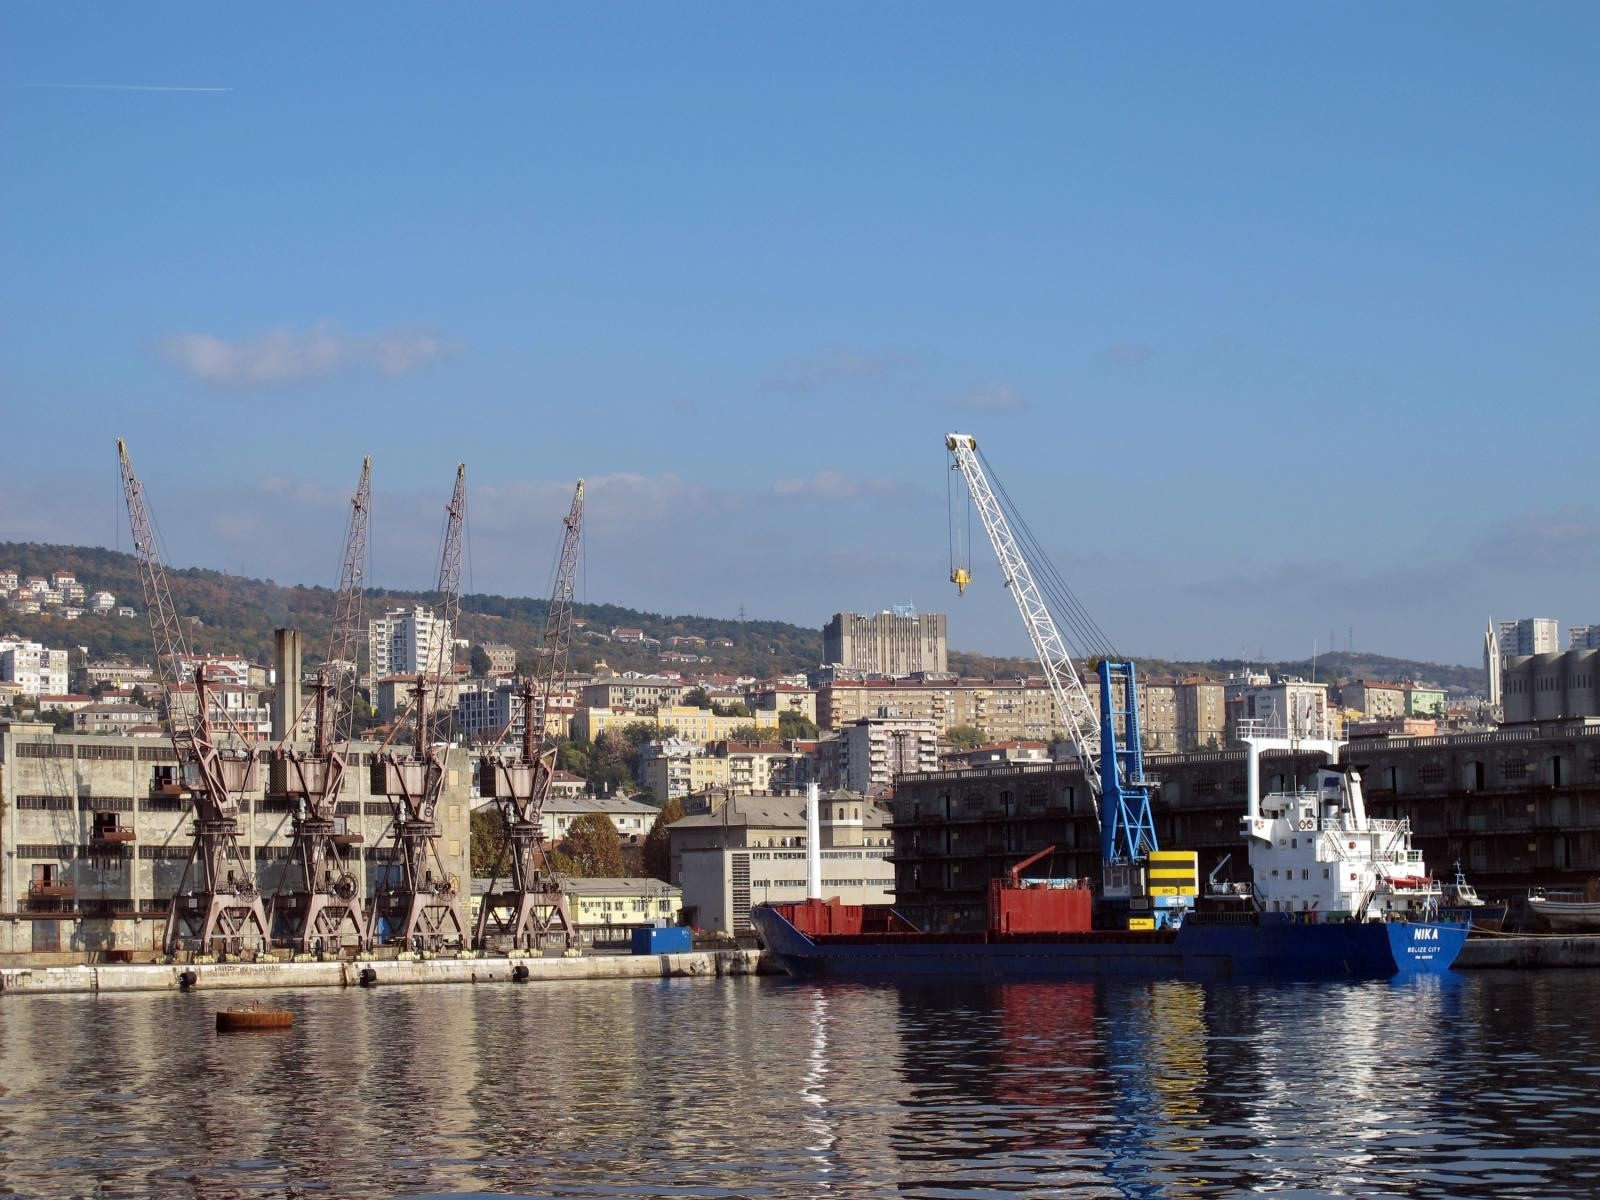 05.11.2011. Rijeka - Rijecka luka, dizalice i brodovi, ilustracija.
Photo: Goran Kovacic/PIXSELL